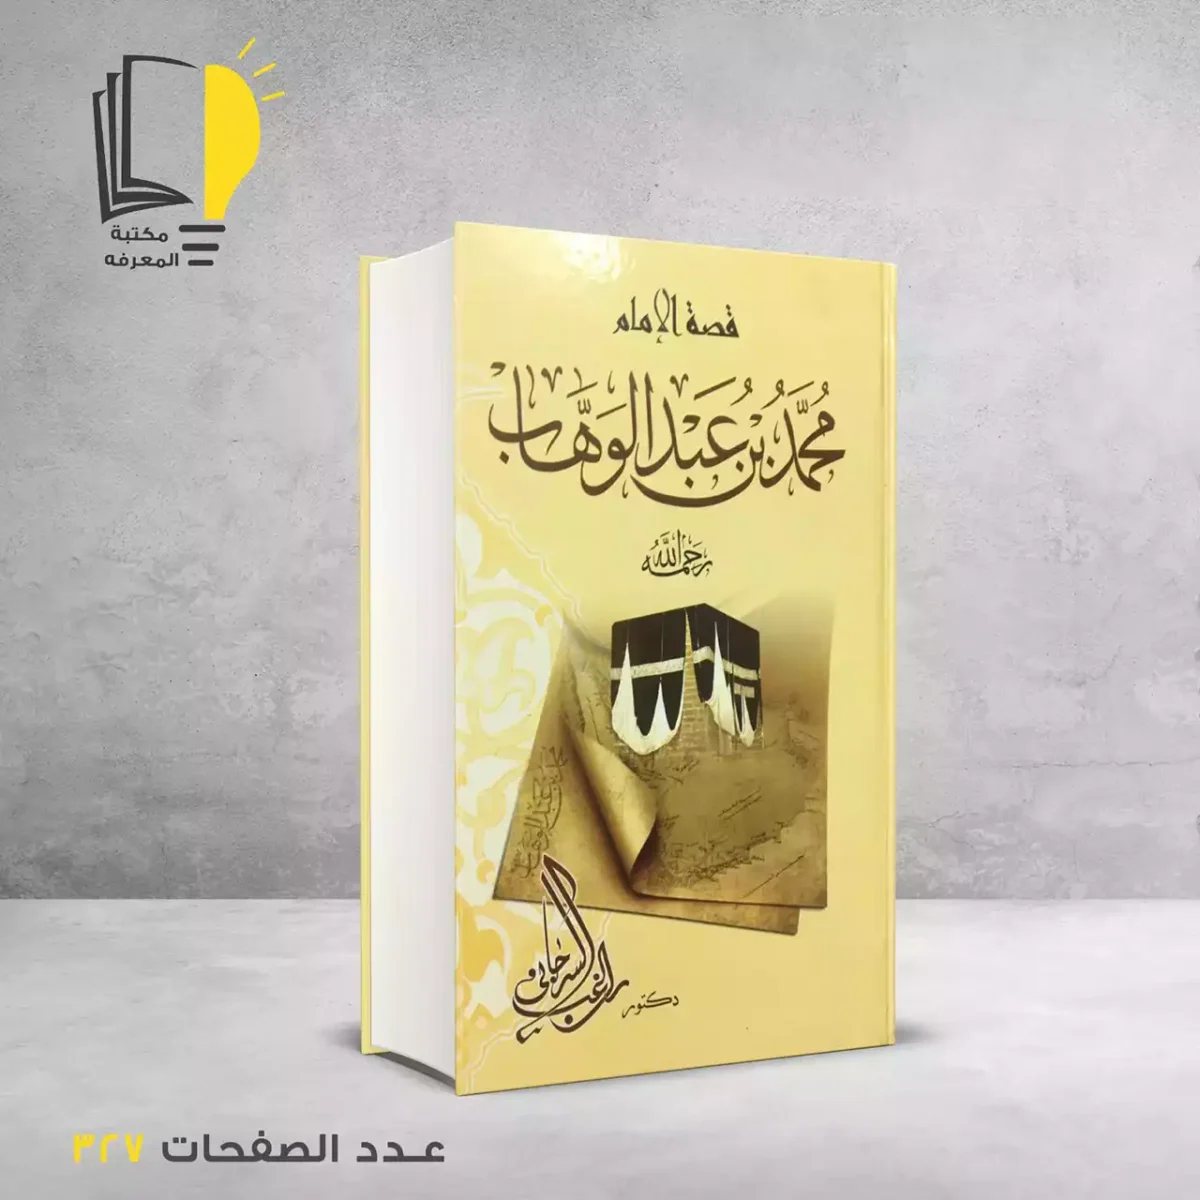 مكتبة المعرفة - كتاب قصة الامام محمد عبدالوهاب